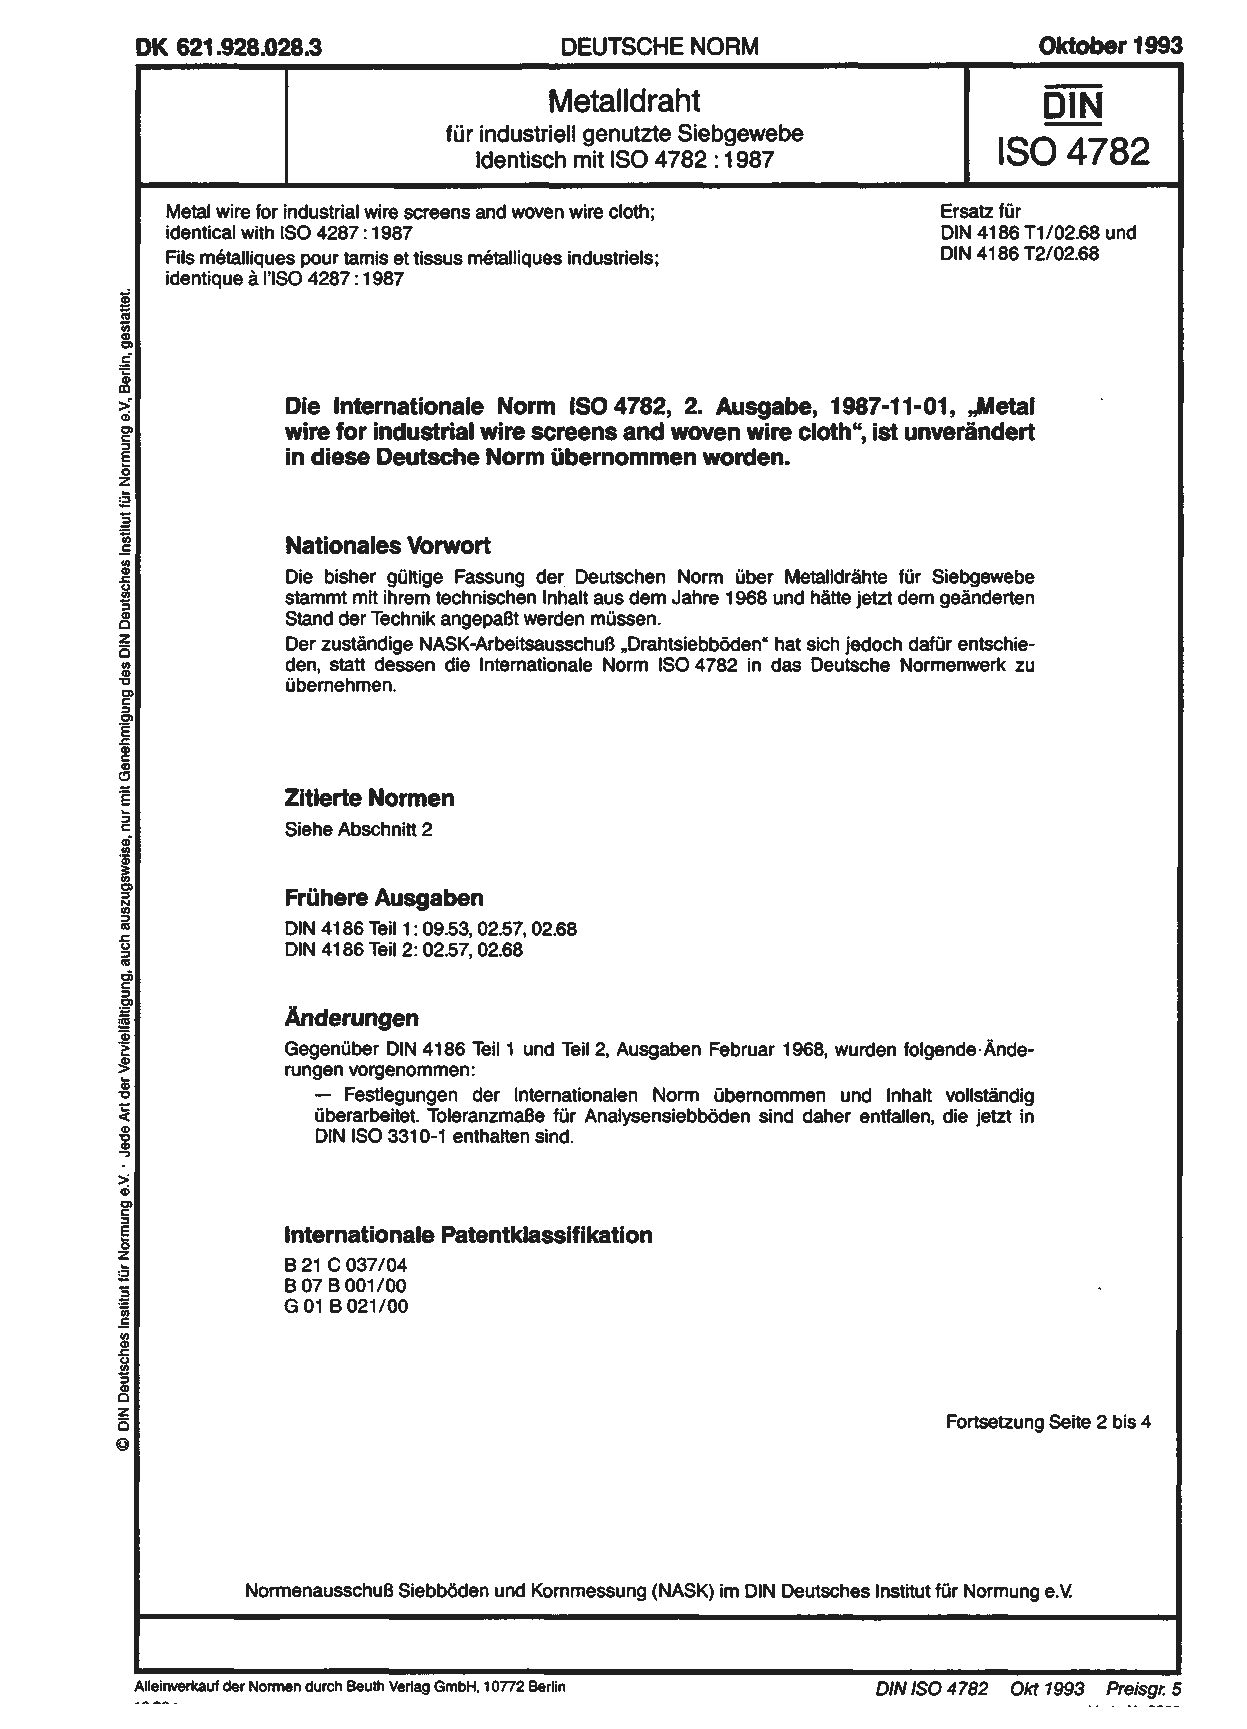 DIN ISO 4782:1993封面图